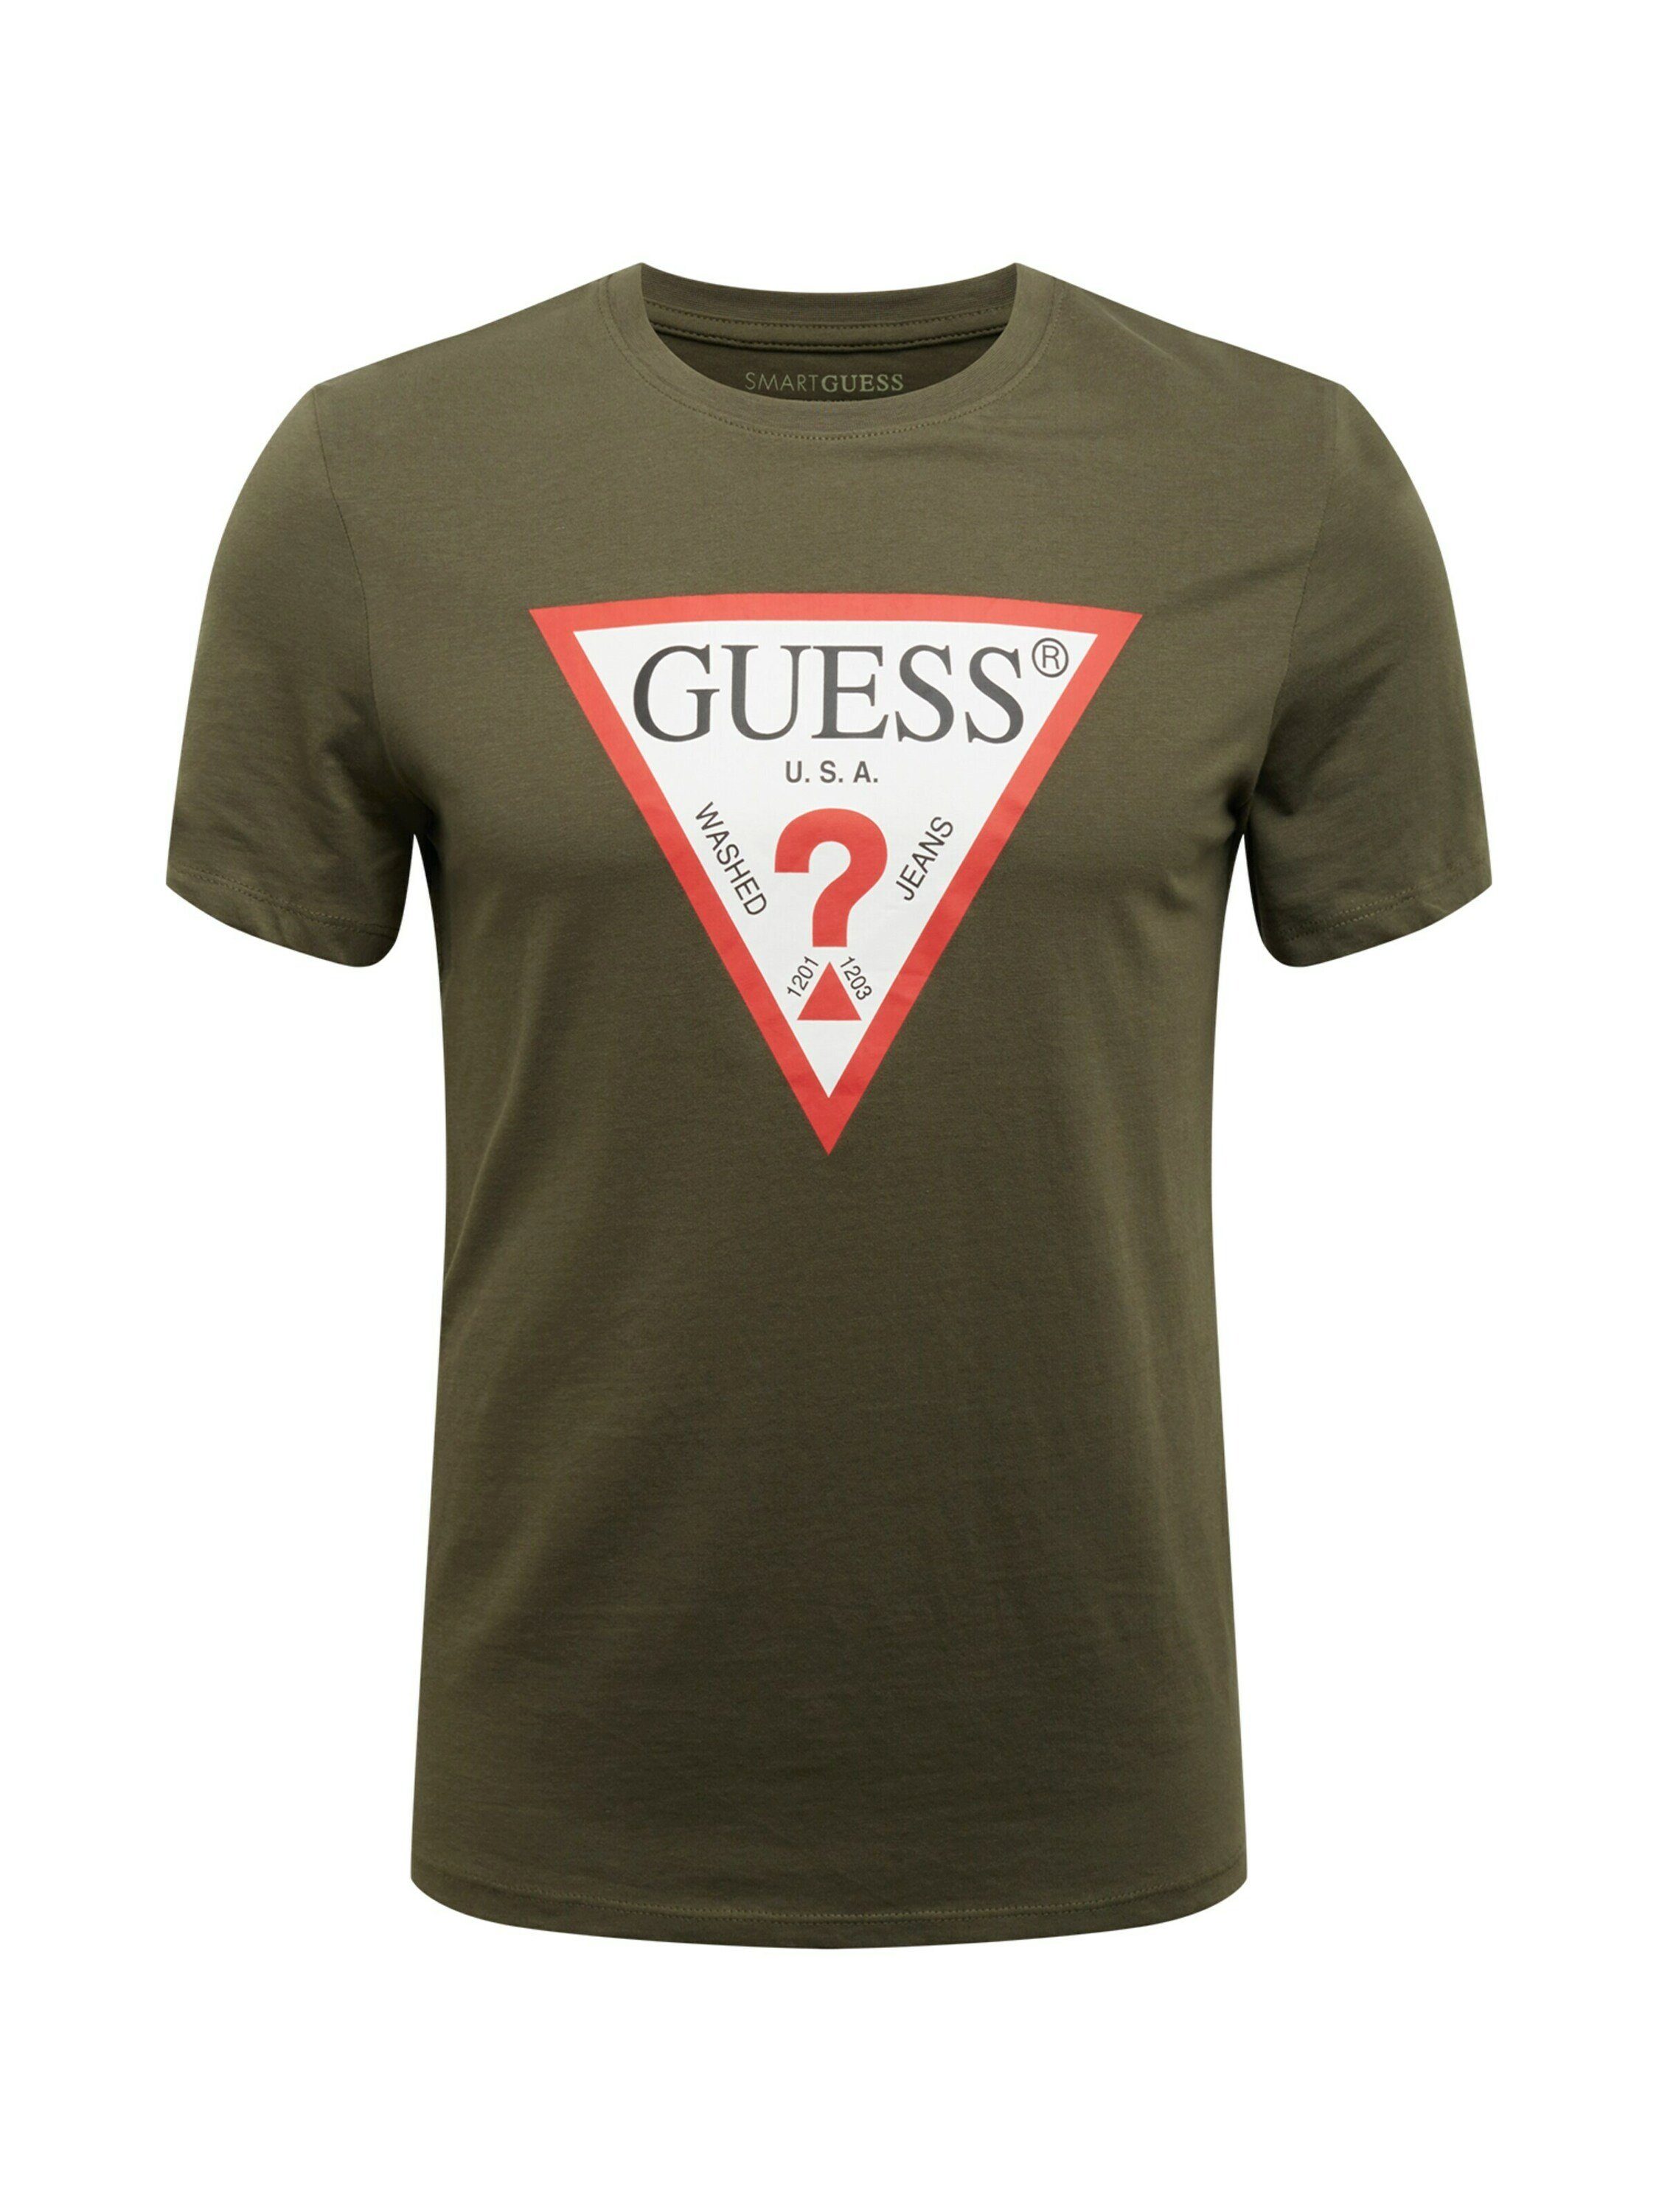 Guess T-Shirt Herren online kaufen | OTTO